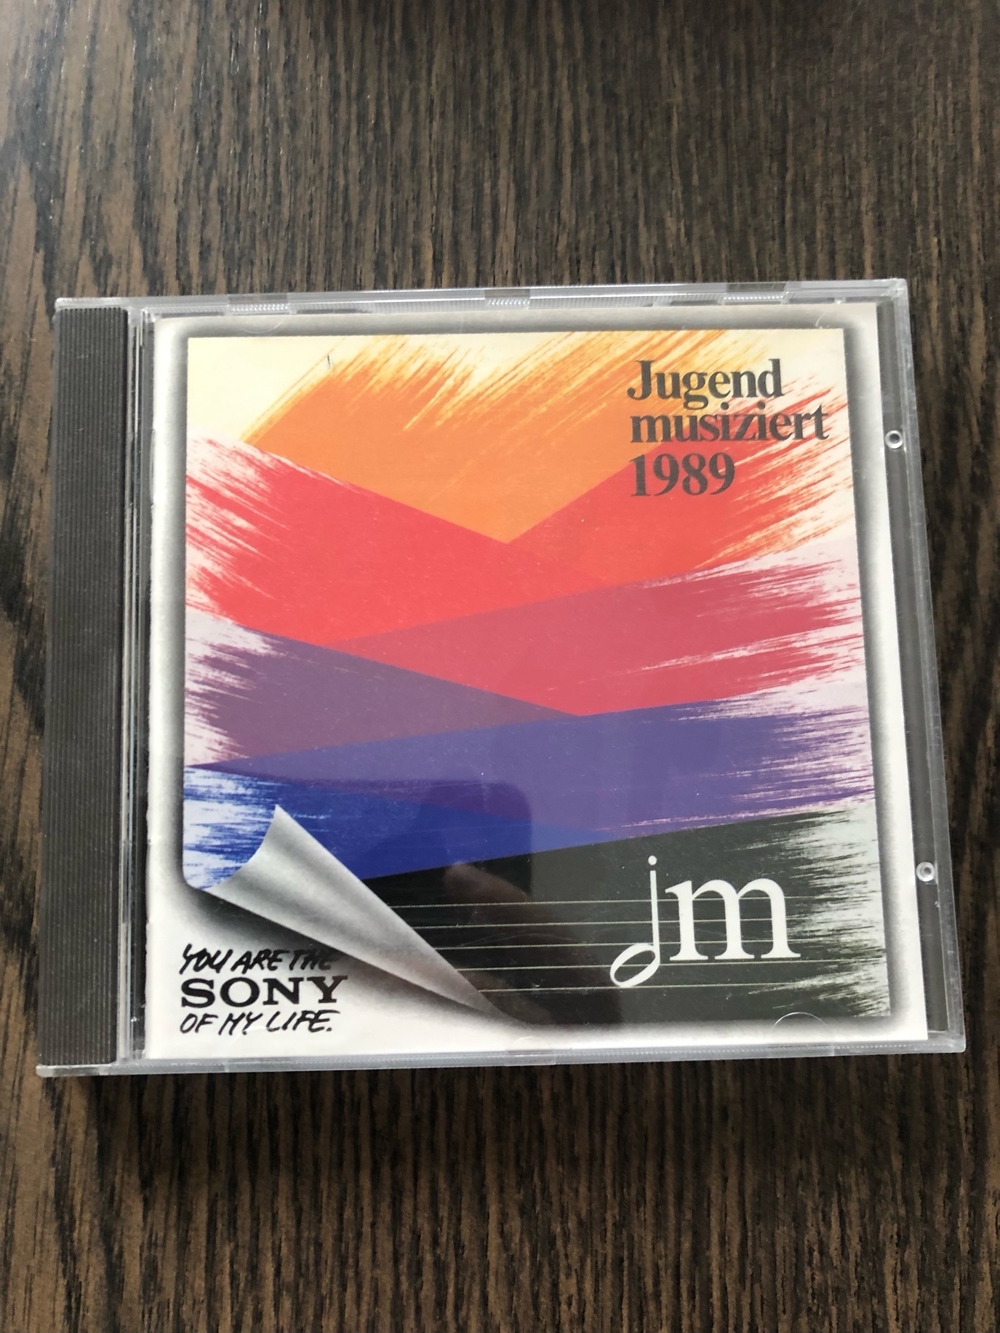 Jugend musiziert 1989